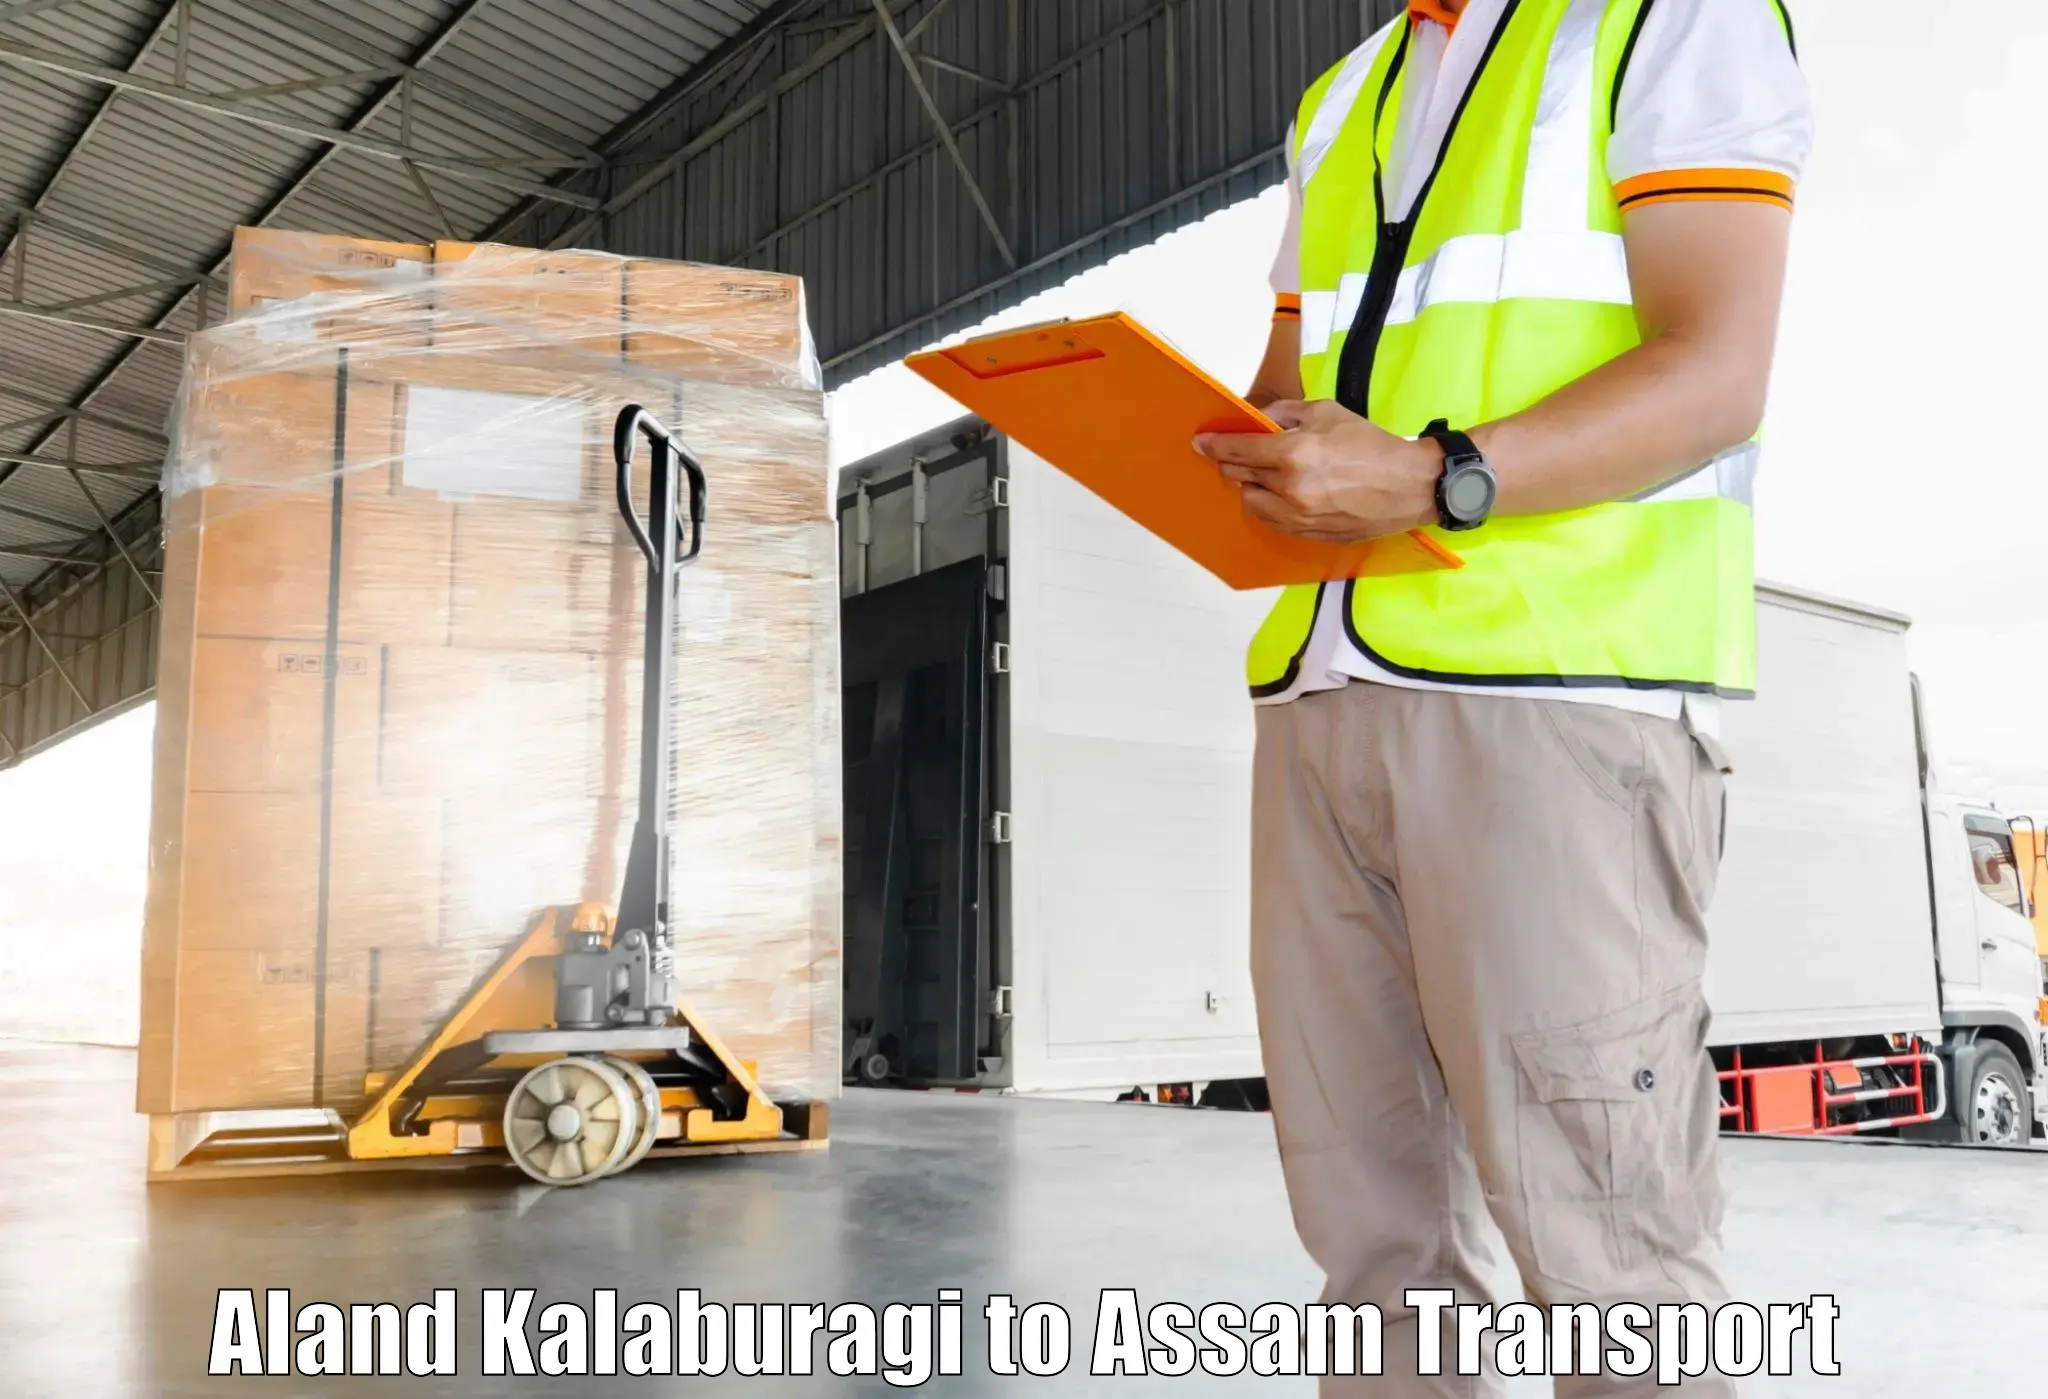 Shipping services Aland Kalaburagi to Morigaon